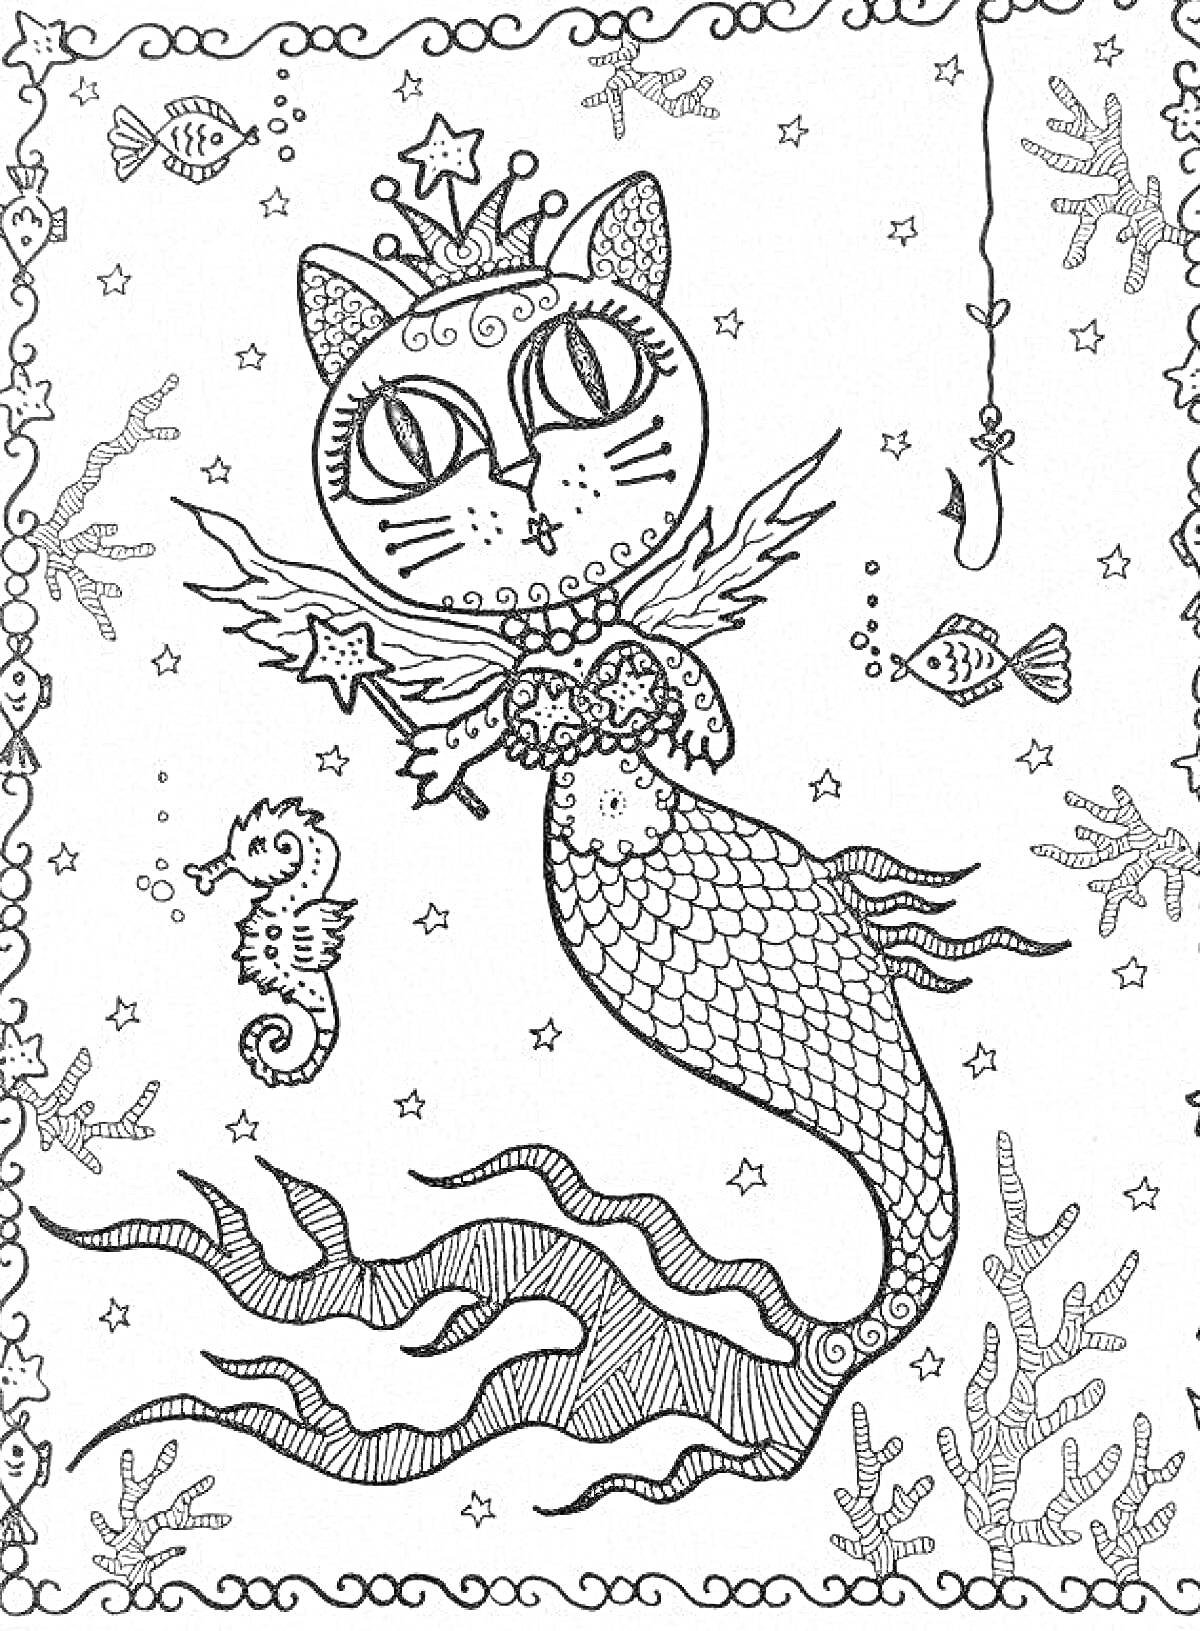 На раскраске изображено: Русалка, Морской конек, Корона, Звезды, Крылья, Кораллы, Подводный мир, Кот, Рыба